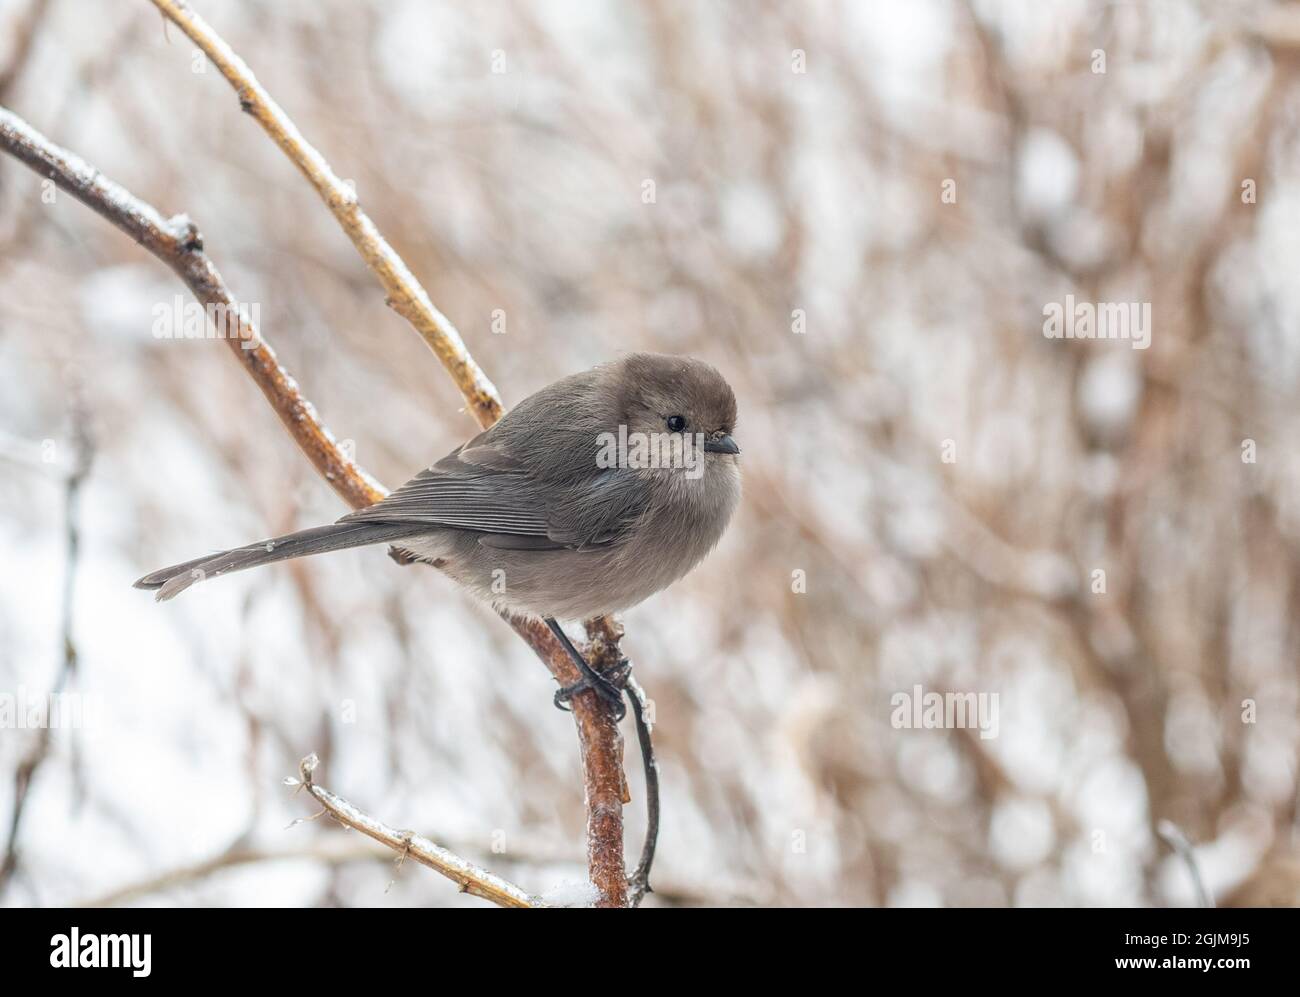 Bushtit mâle perché sur une branche glacée dans la neige d'hiver. (Psaltriparus minimus) Banque D'Images